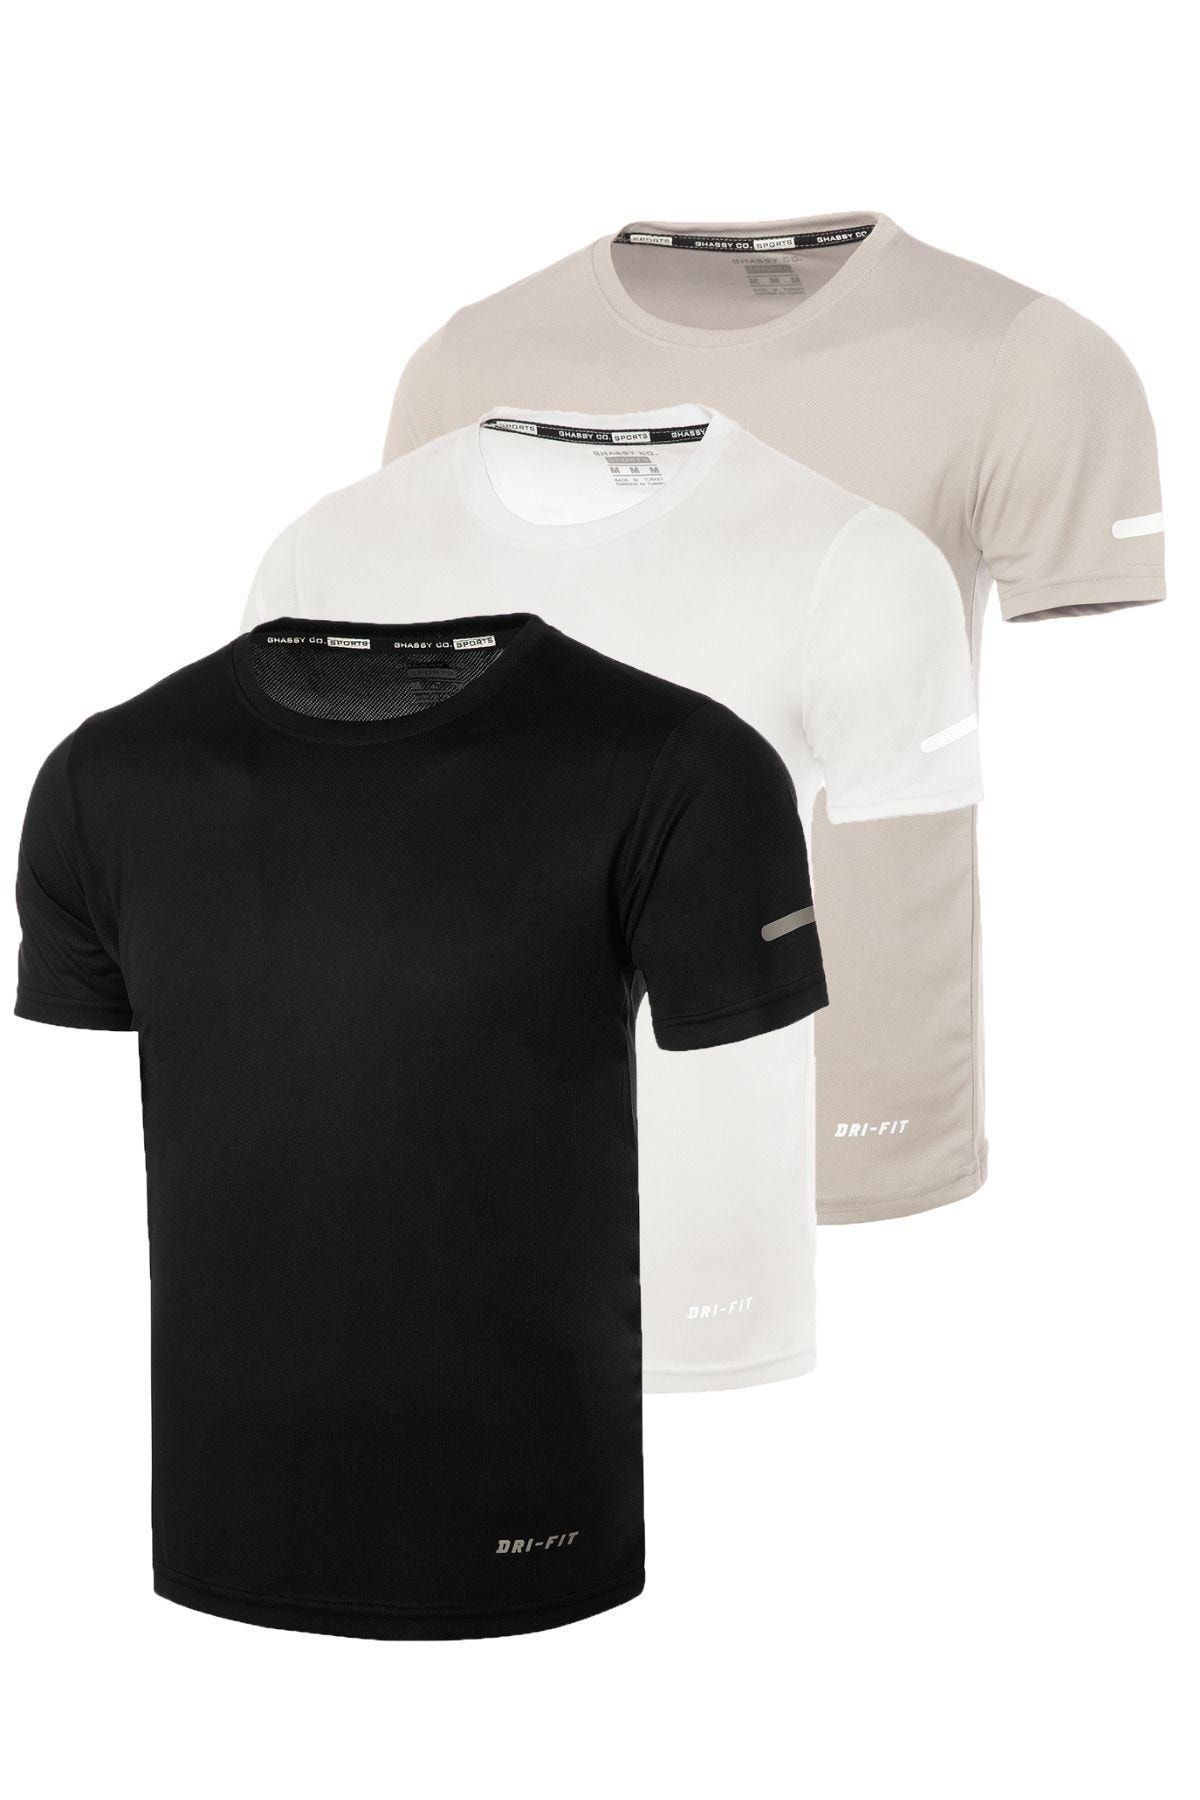 Ghassy Co Erkek 3'lü Paket Nem Emici Hızlı Kuruma Atletik Spor Tshirt